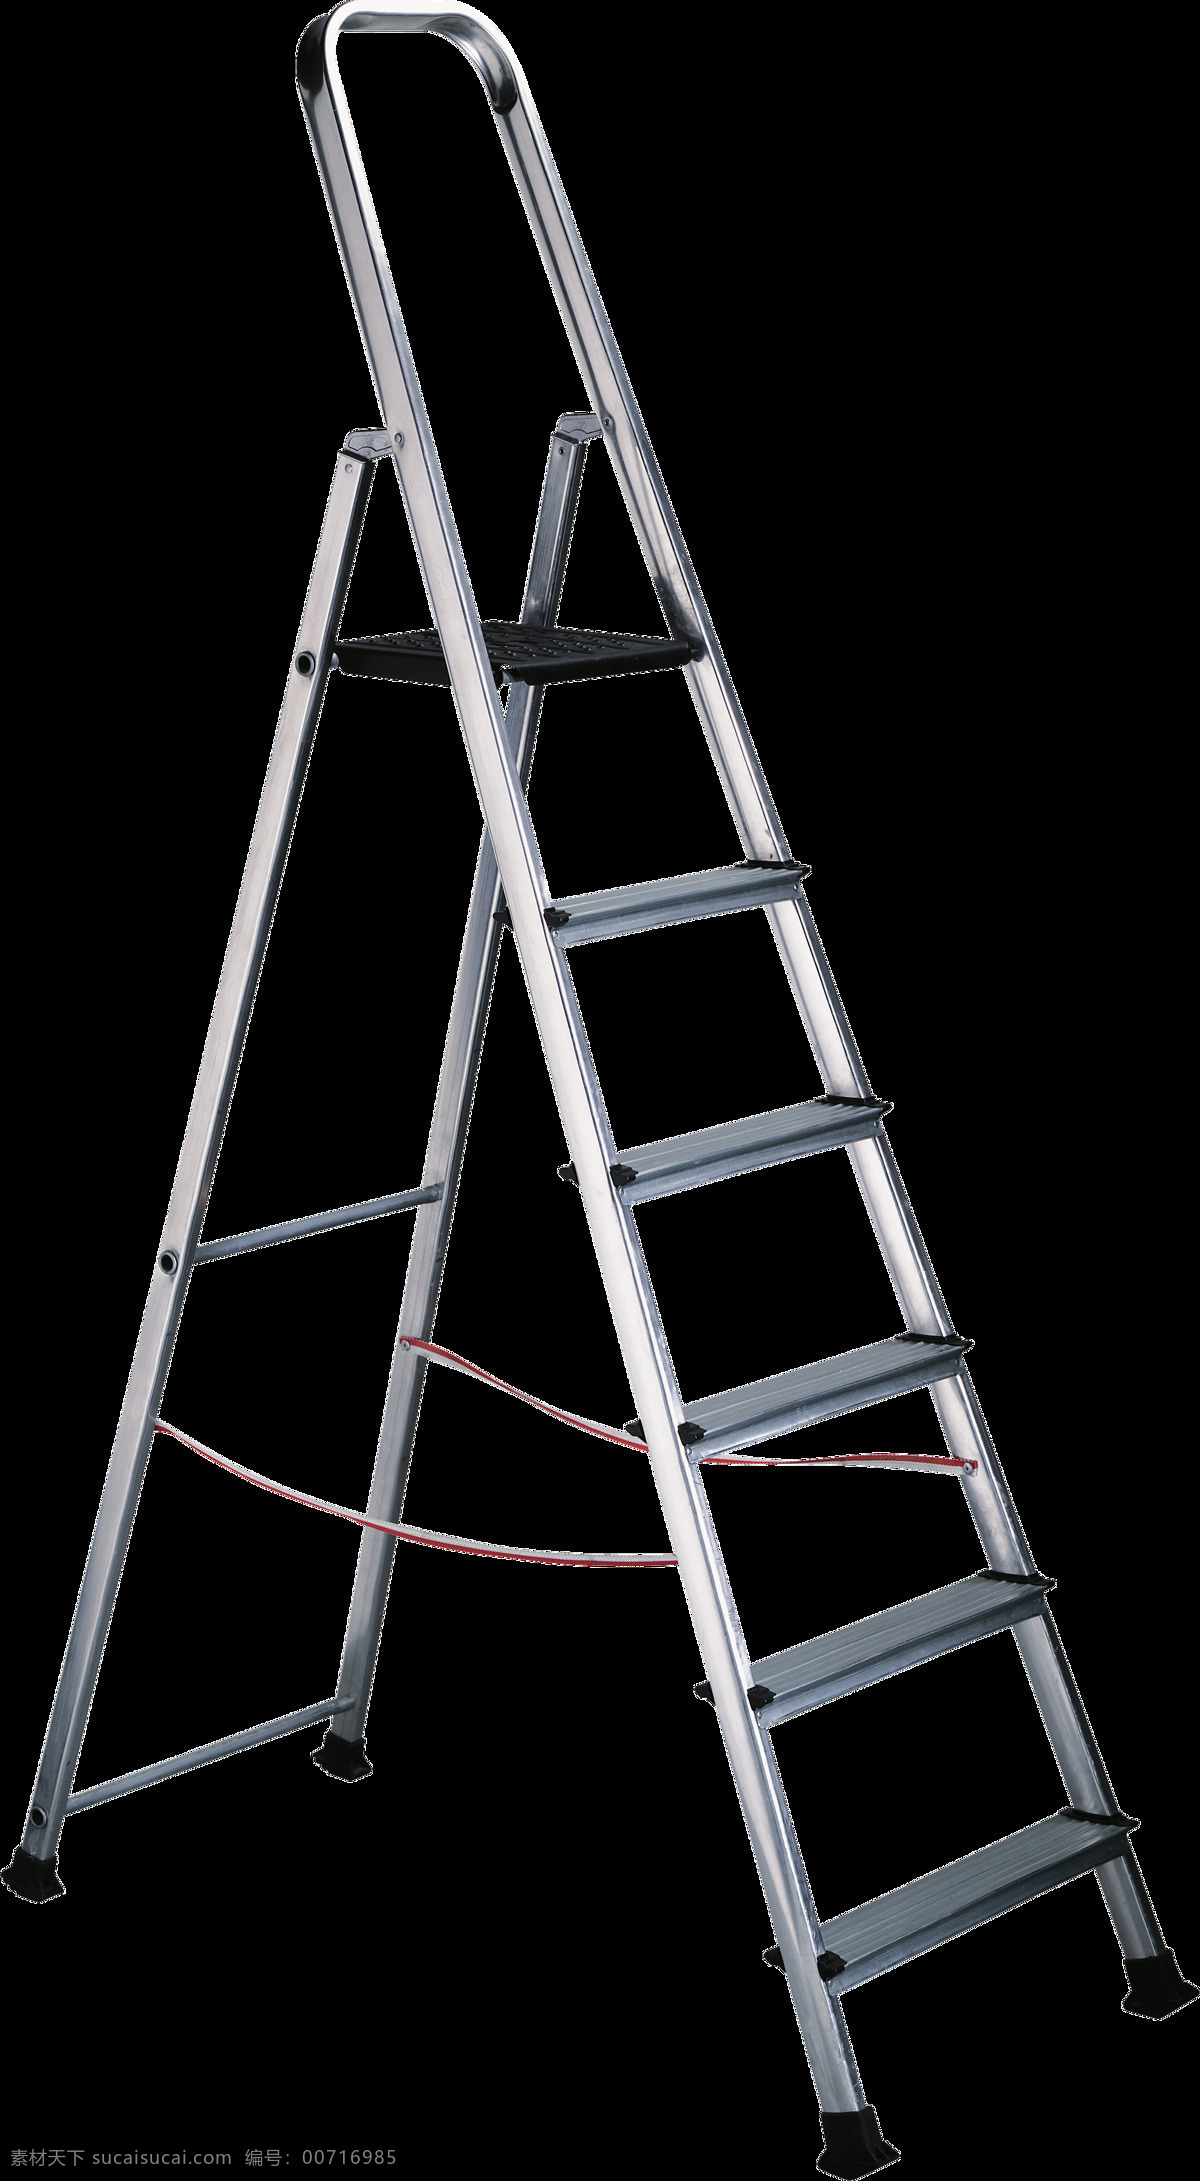 铝制 人字 梯 免 抠 透明 图 层 梯子卡通图片 叠梯子 翻墙梯子 吊梯子 铁梯子 架梯子 创意梯子 长梯子 梯子素材 木头梯子 木梯子 竹梯子 云梯 工程梯子 折叠梯子